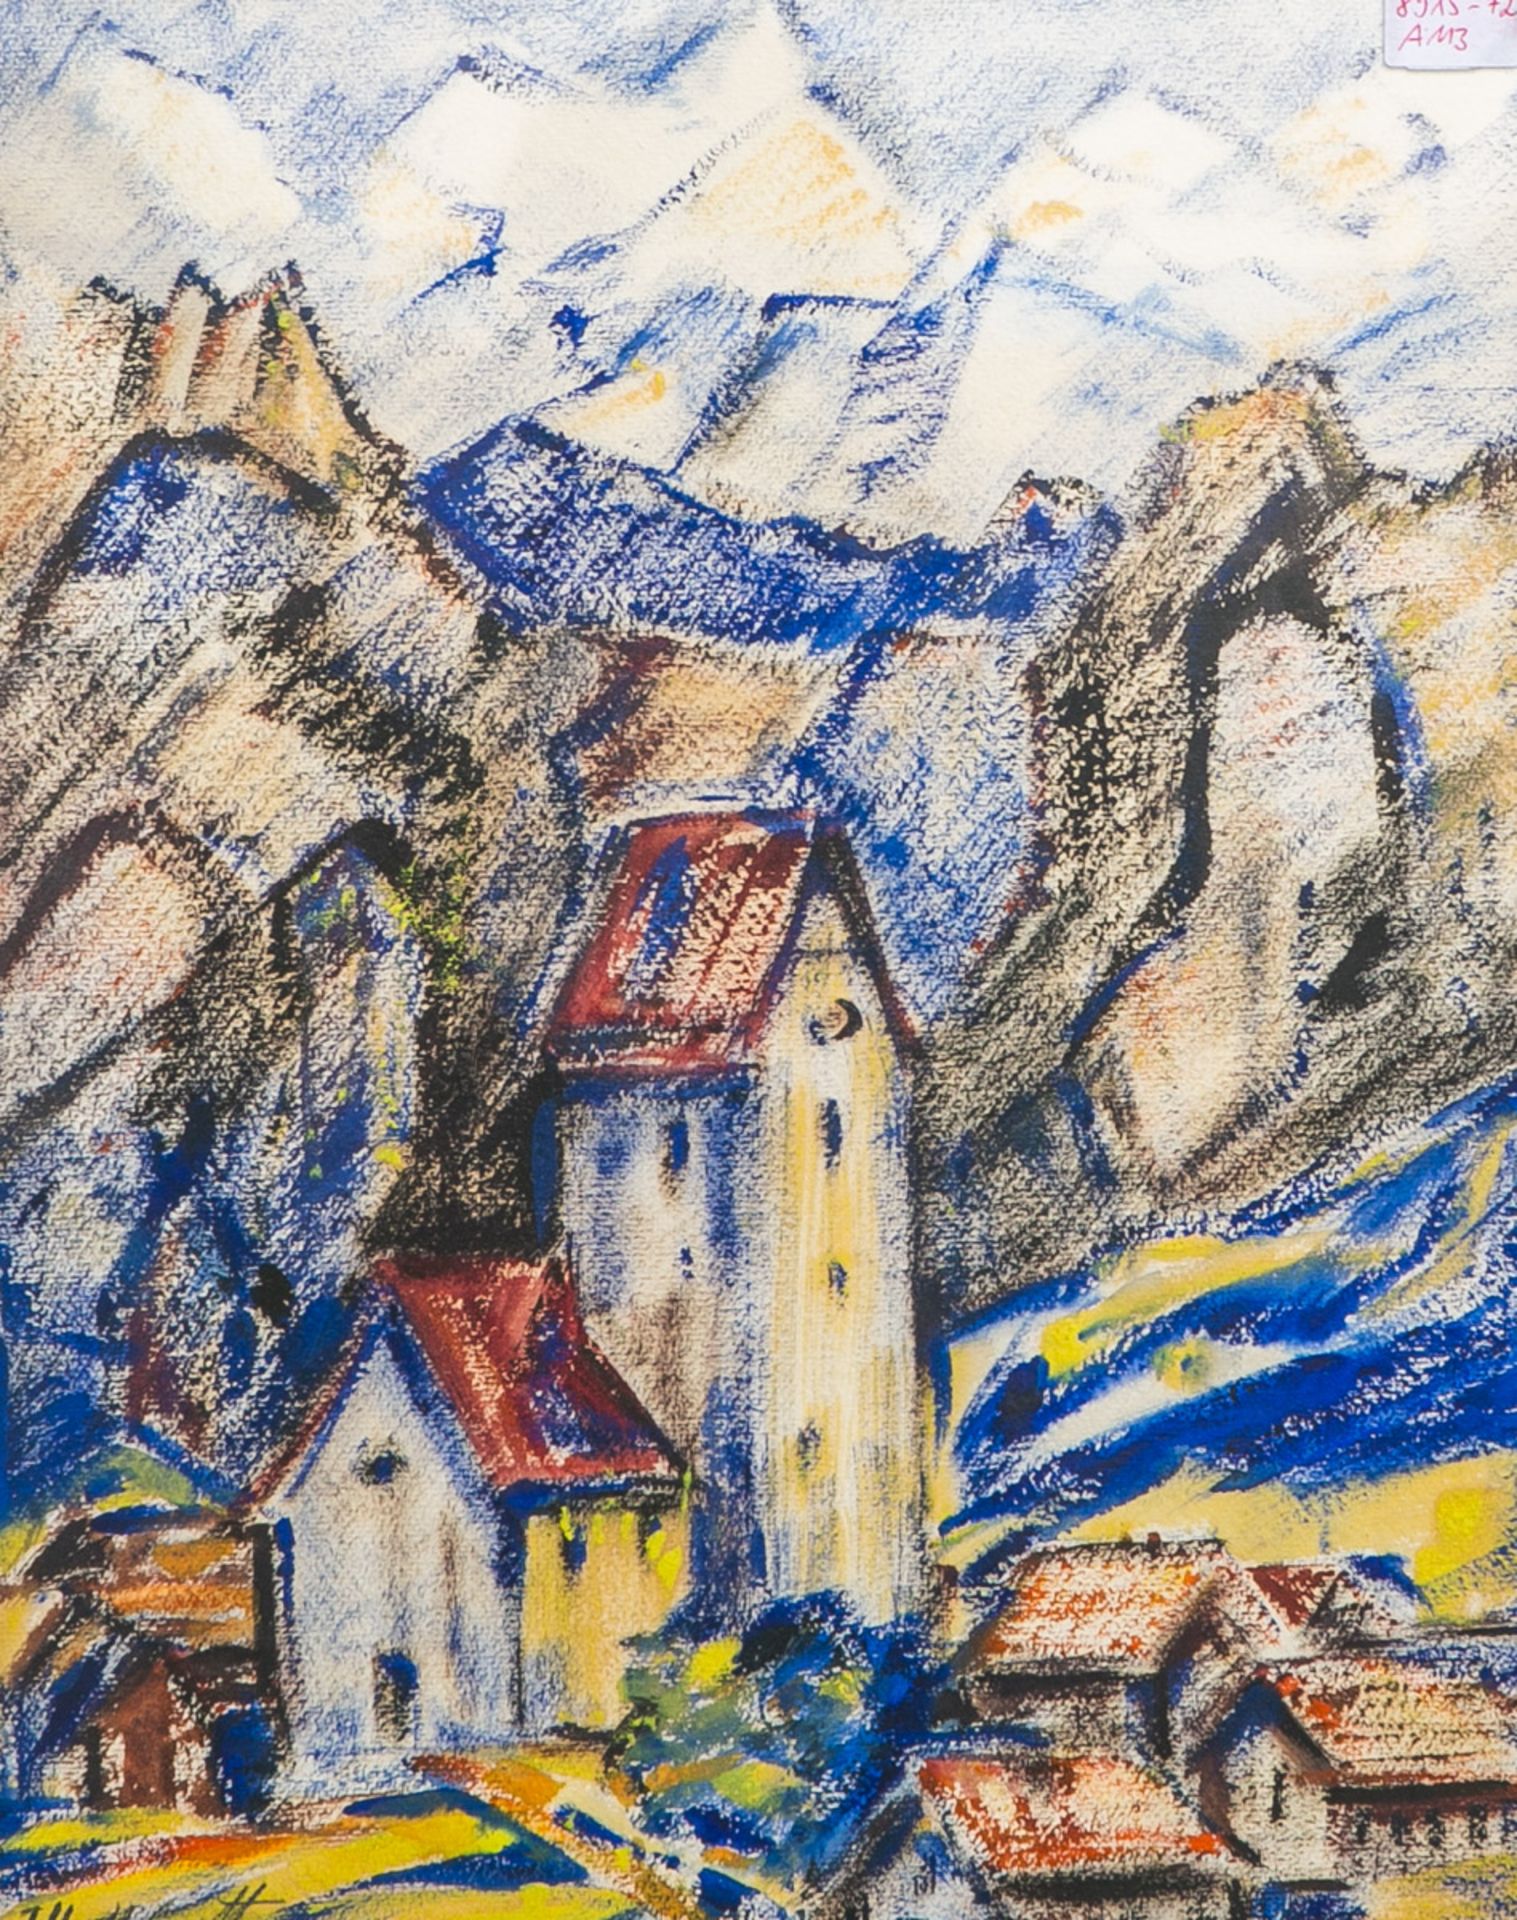 Unleserlich signiert, Kirchturm vor alpiner Kulisse - Bild 2 aus 3